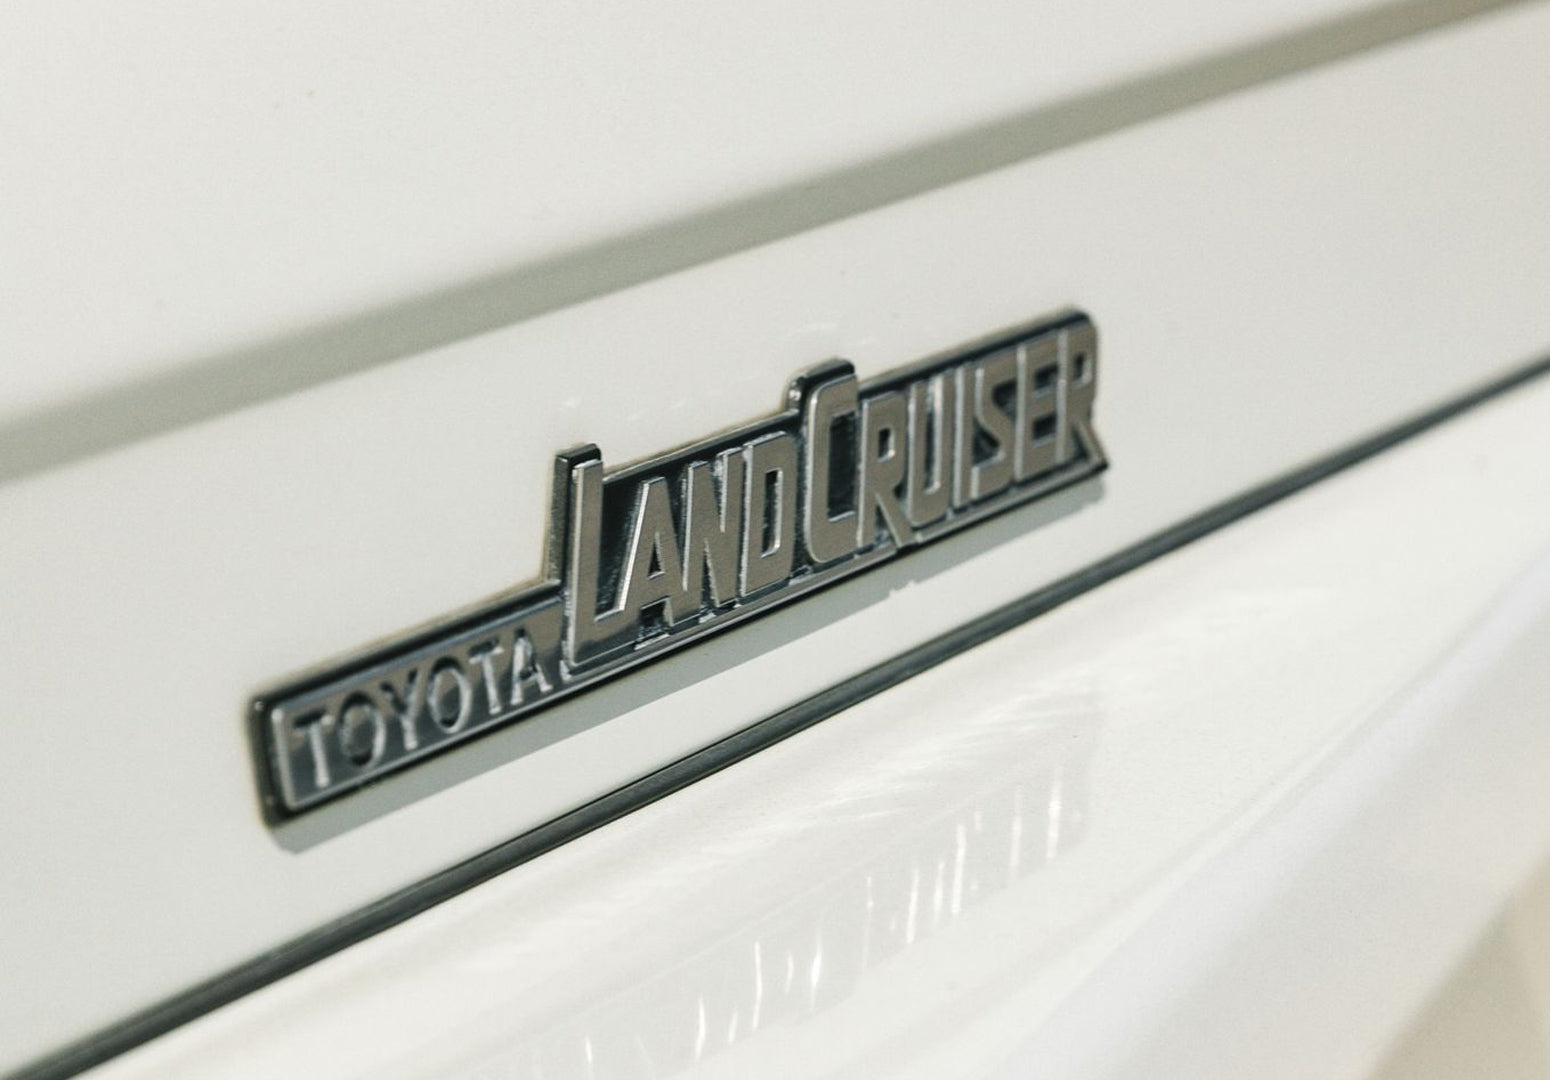 land cruiser logo font